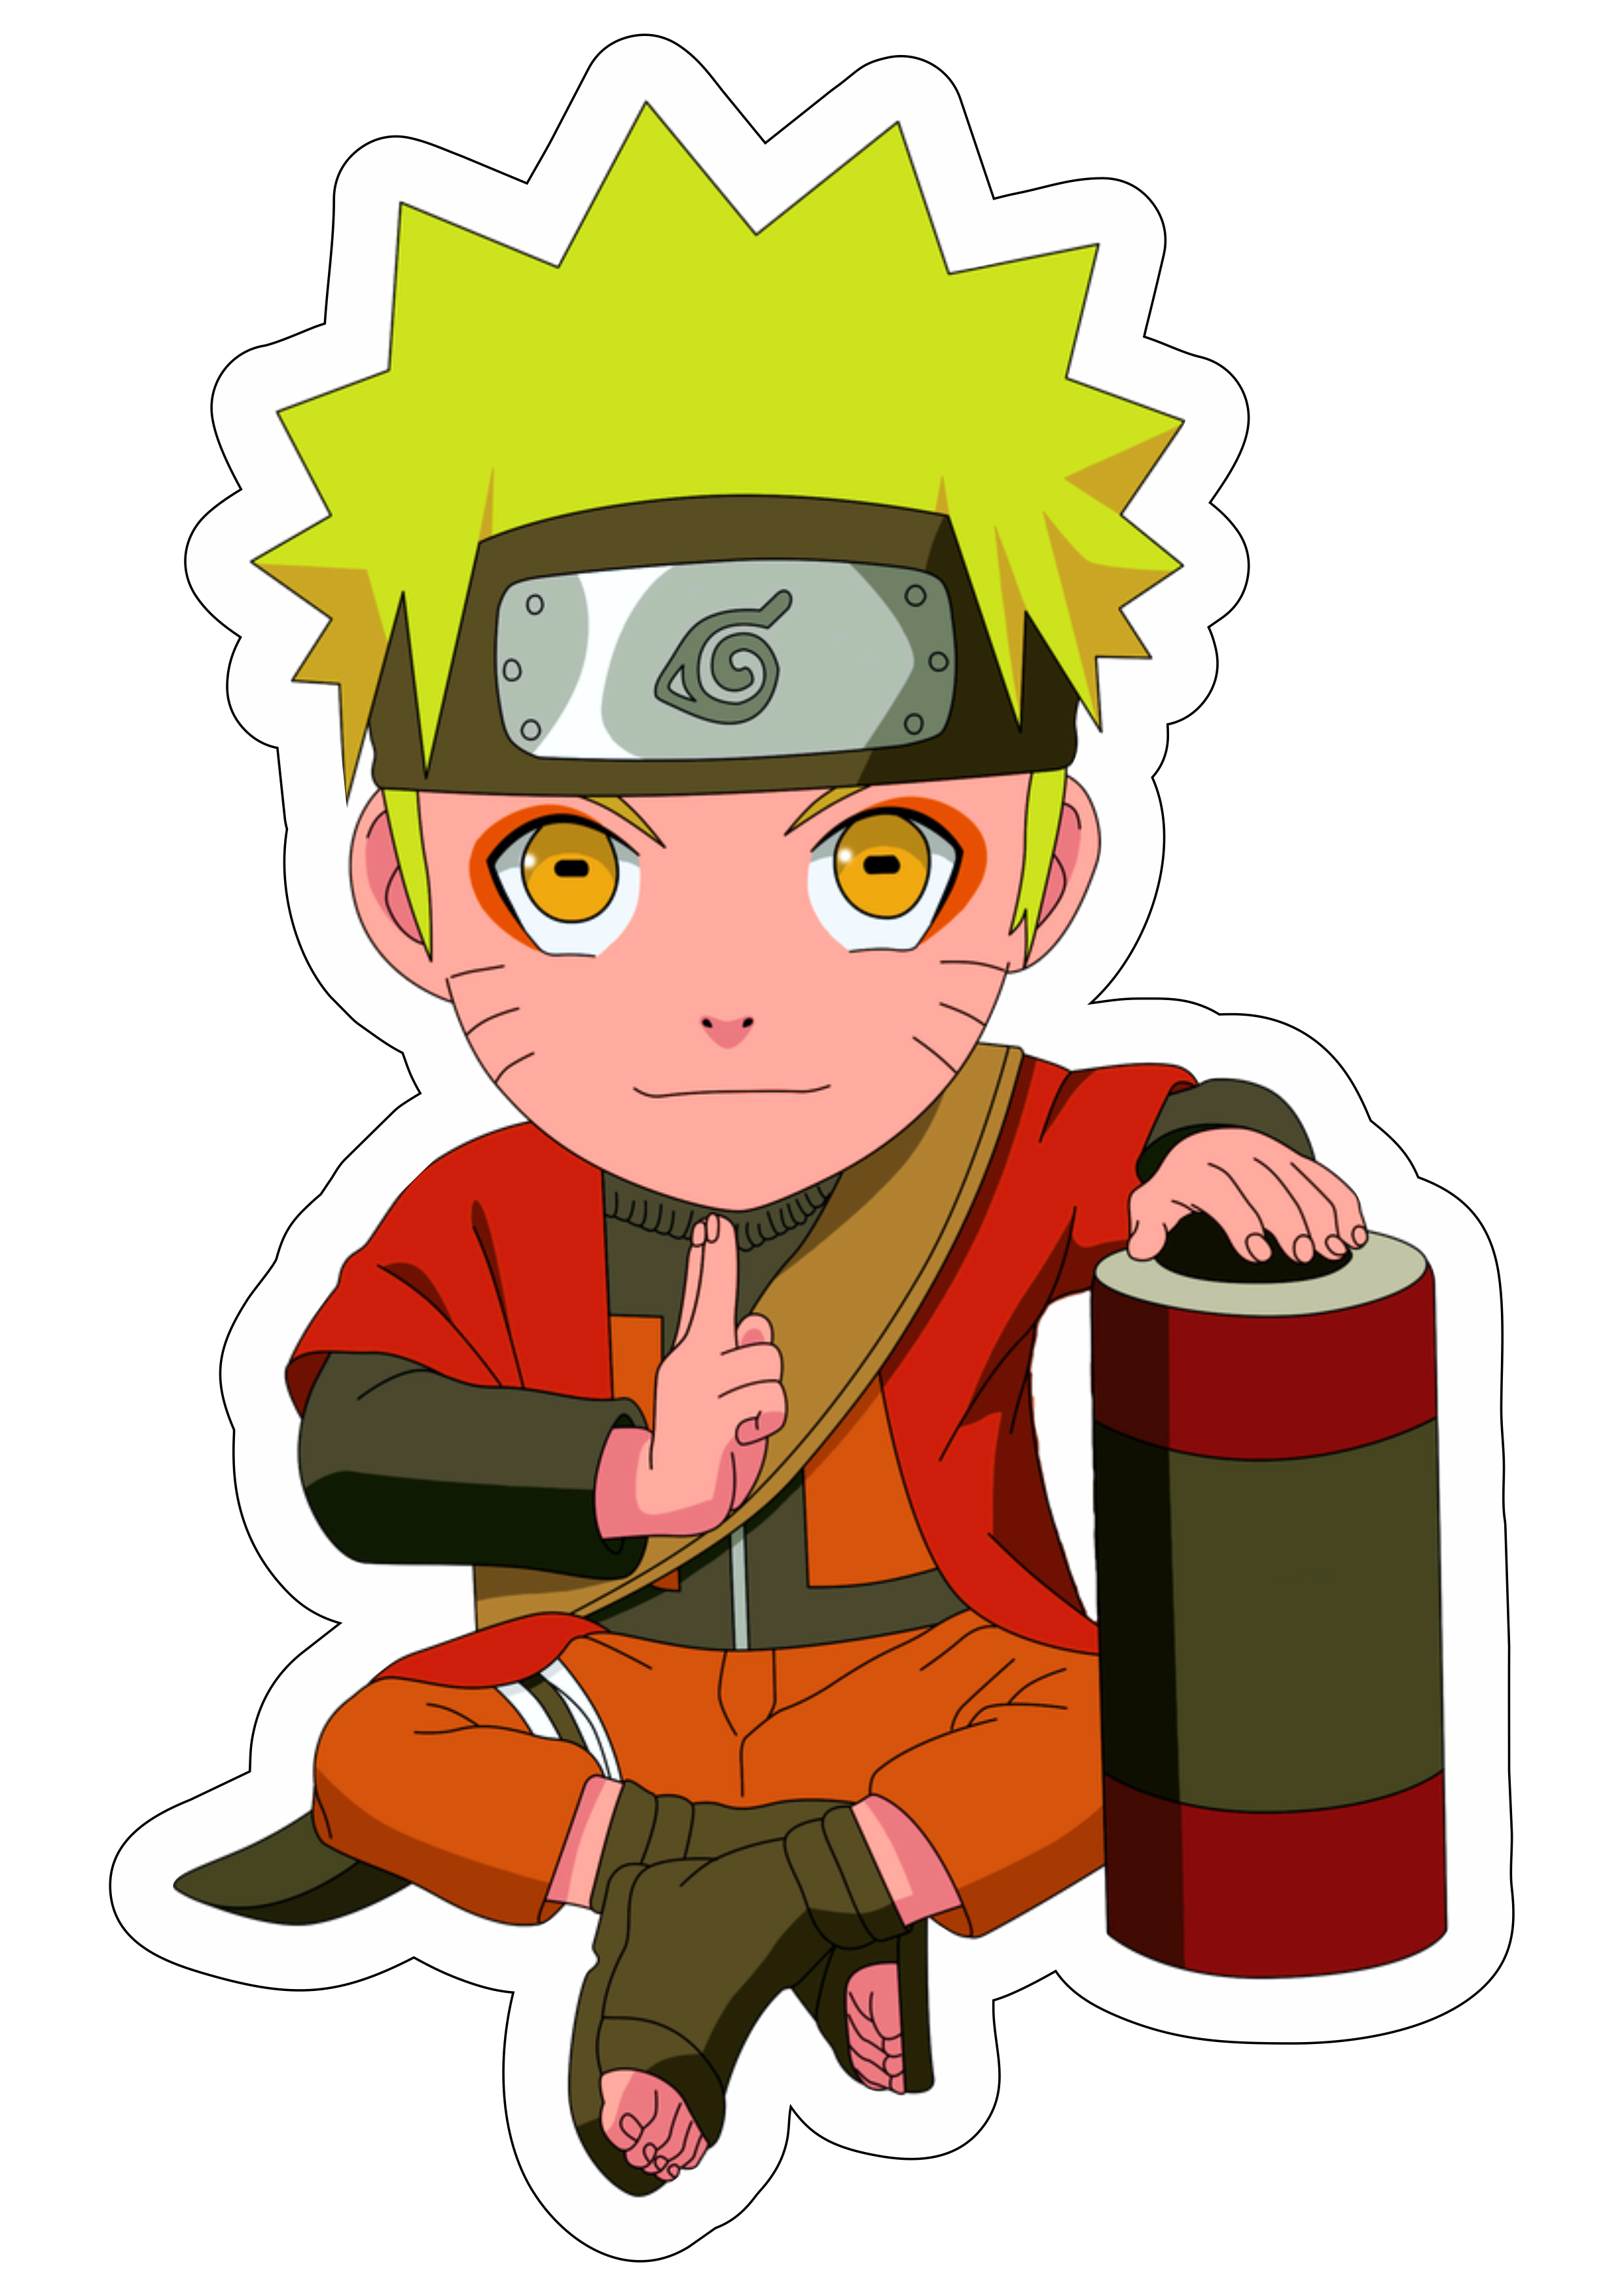 Naruto modo sábio anime desenho fofinho cute personagem fictício artigos de papelaria imagem sem fundo png